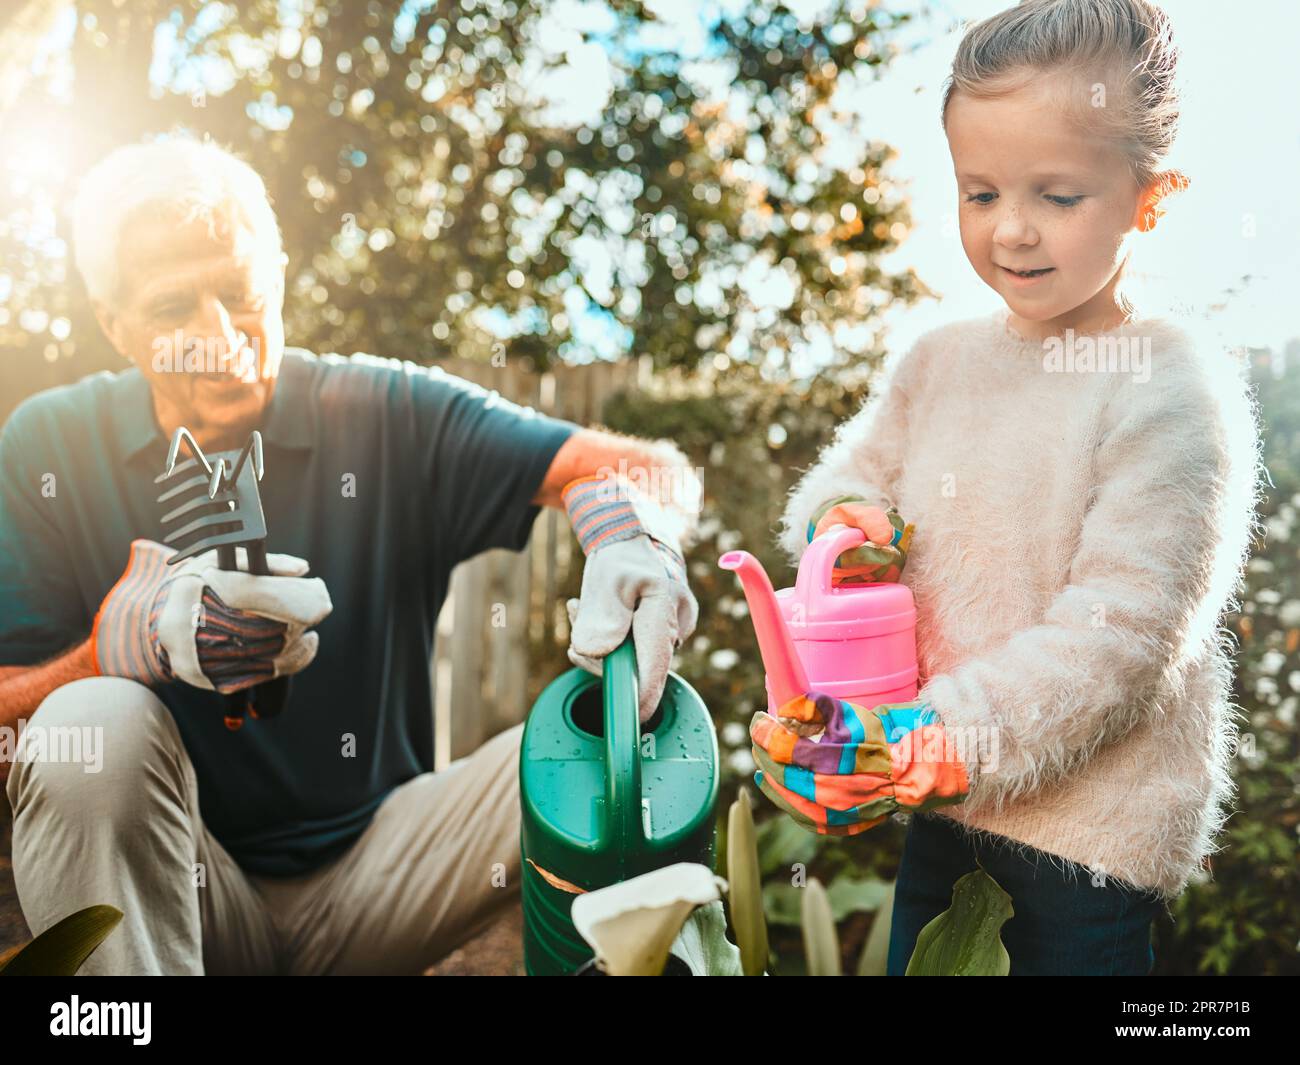 Il n'y a pas d'erreurs de jardinage, seulement des expériences. Photo d'une adorable petite fille en jardinage avec son grand-père. Banque D'Images